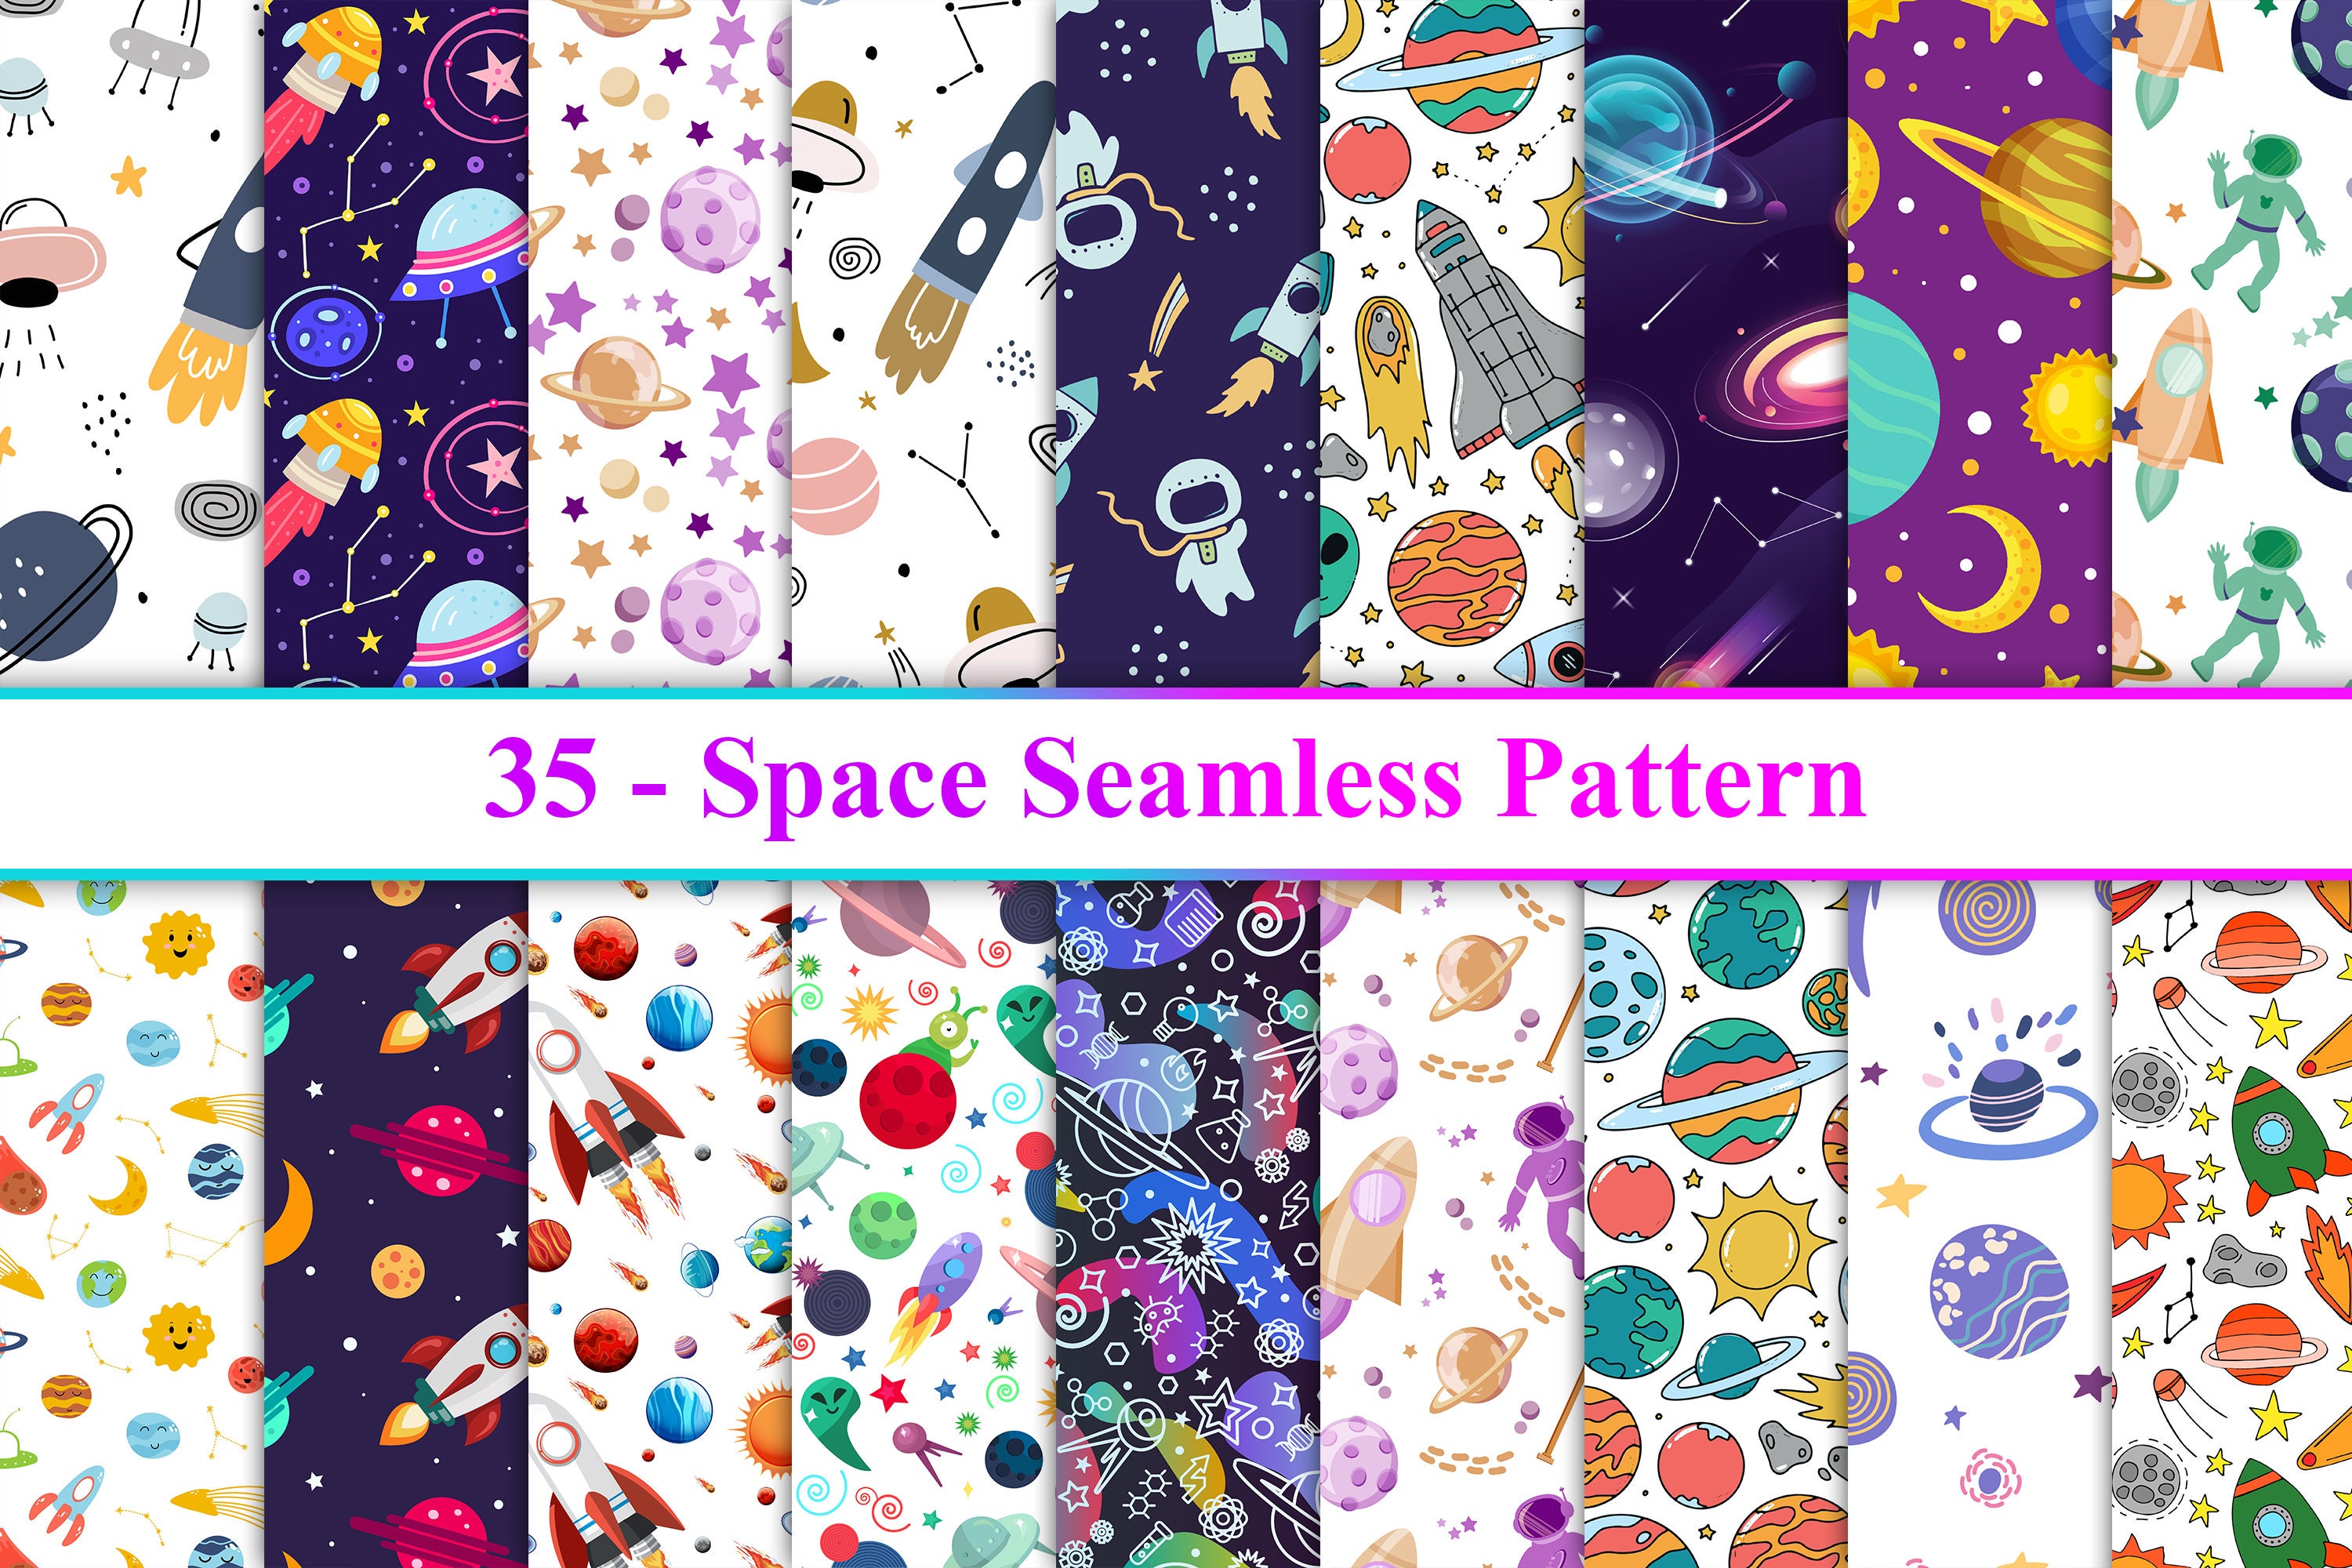 Seamless Pattern